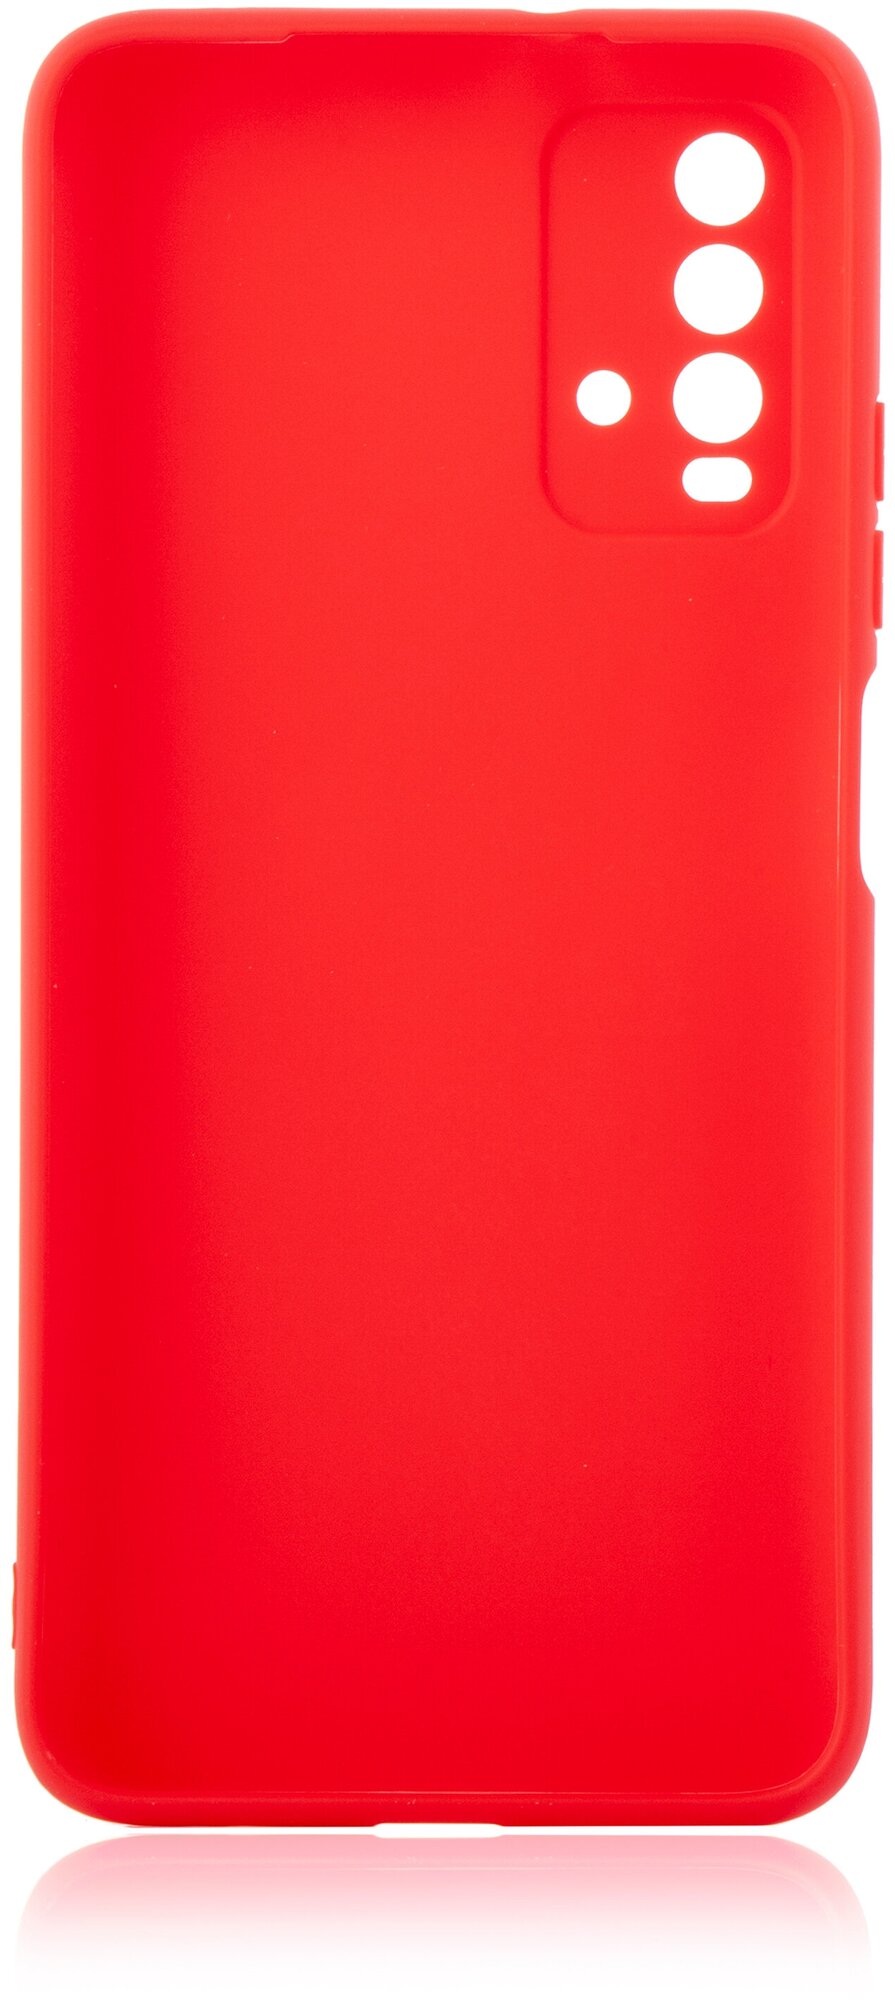 Чехол ROSCO для Xiaomi Redmi 9T, Poco M3 (Сяоми Редми 9Т, Поко м3), бортик (защита) вокруг блока камеры, силиконовый чехол, красный